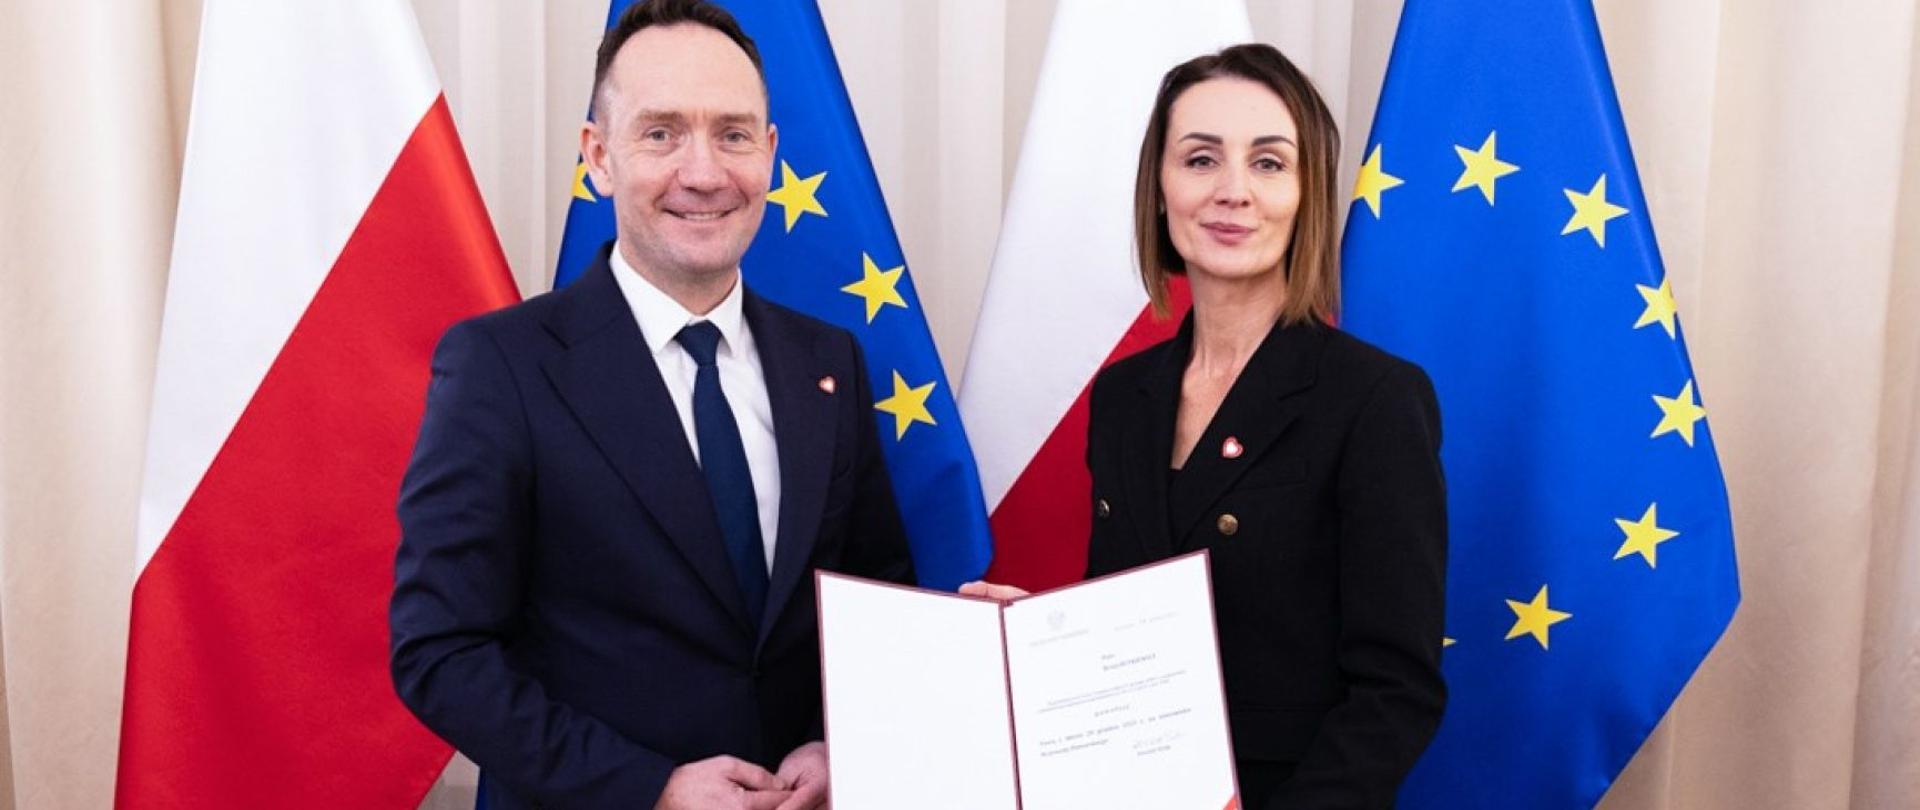 Zdjęcie przedstawia dwie osoby, kobietę i mężczyznę. W tle widać flagę Polski i UE